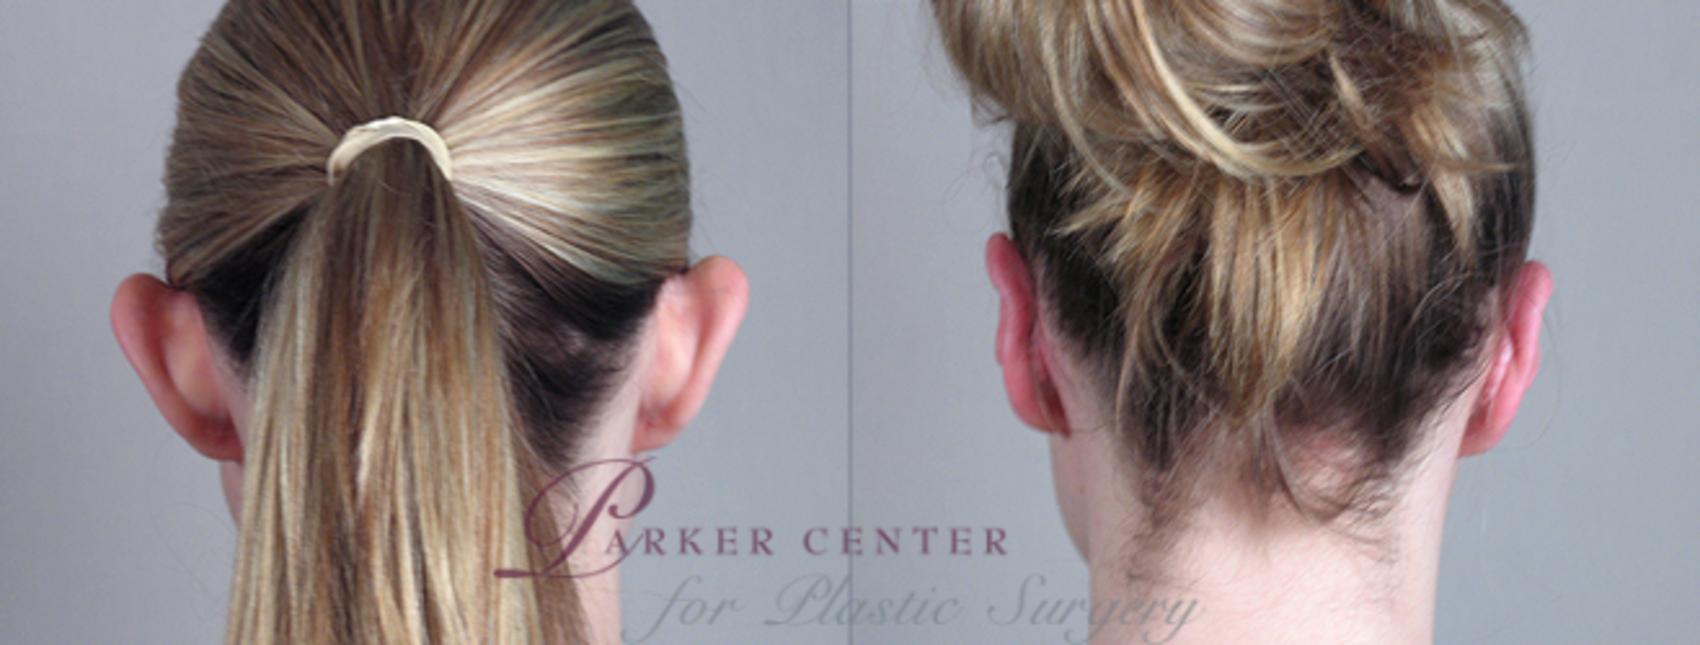 Ear Surgery Case 233 Before & After View #1 | Paramus, NJ | Parker Center for Plastic Surgery